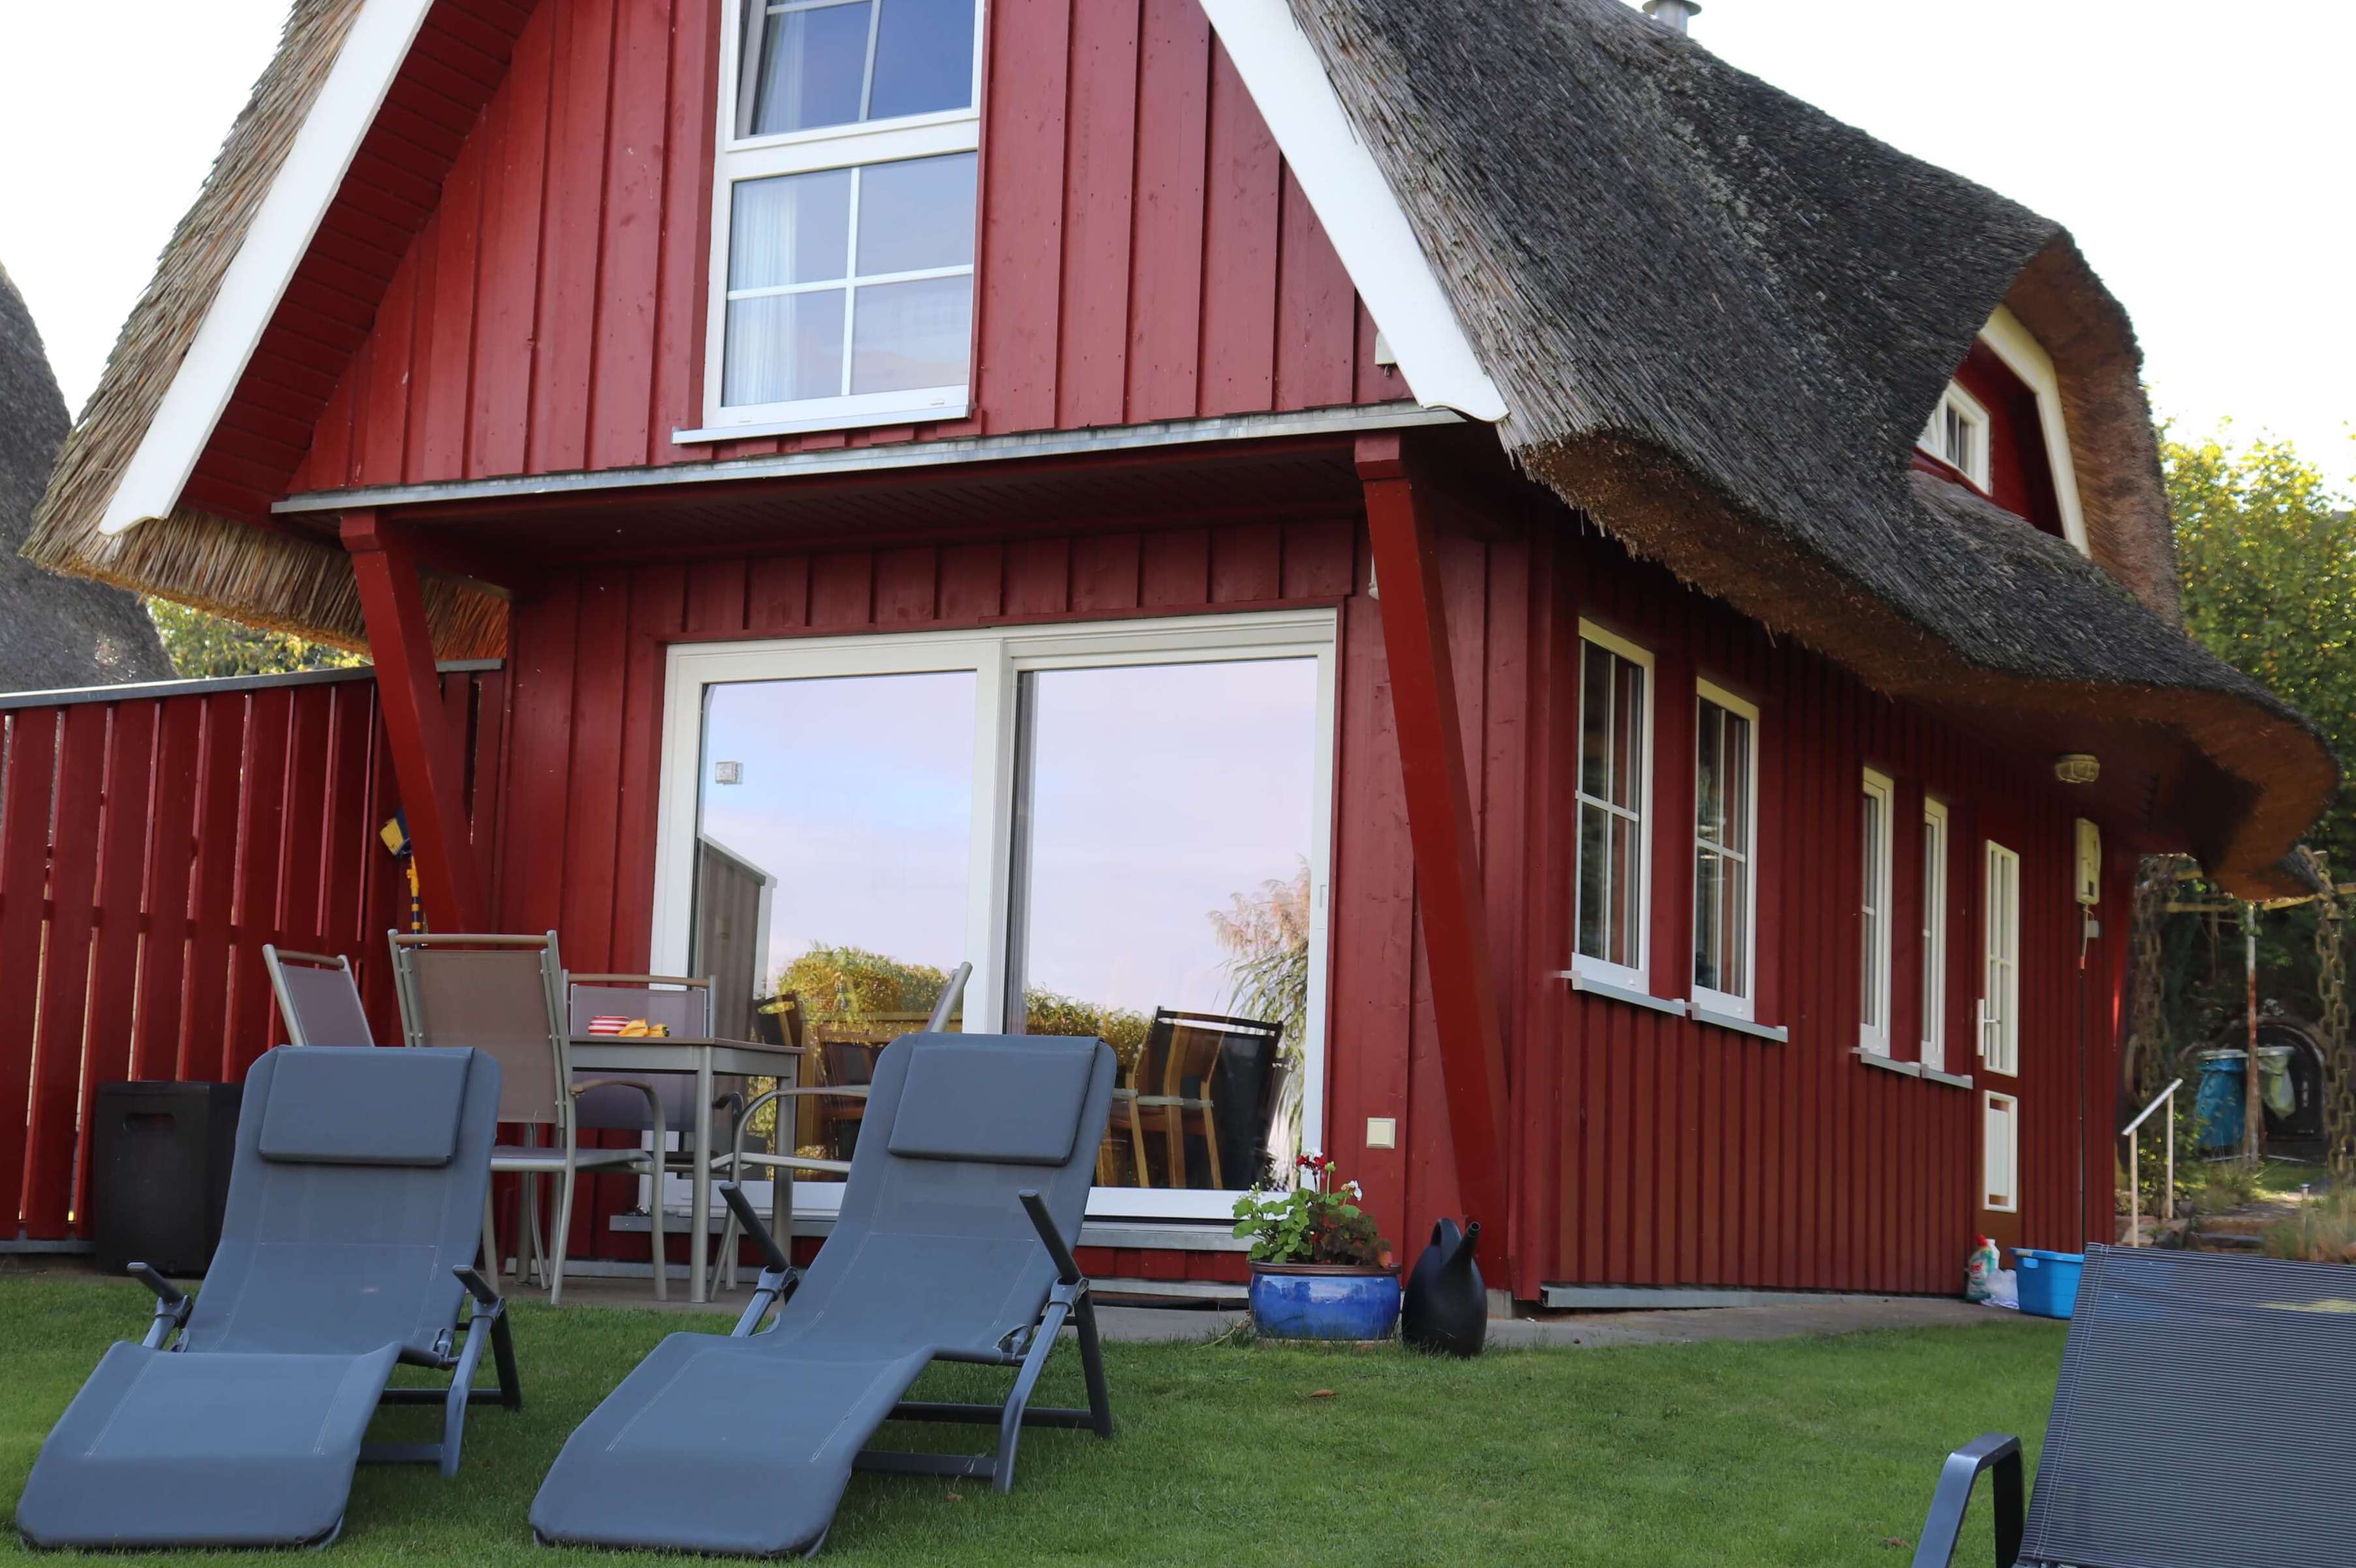 Kleines Ferienhaus der Familie Ohde am Sternberger See mit einer gelben Holzfassade, einem Reetdach und einer kleinen Terrasse.